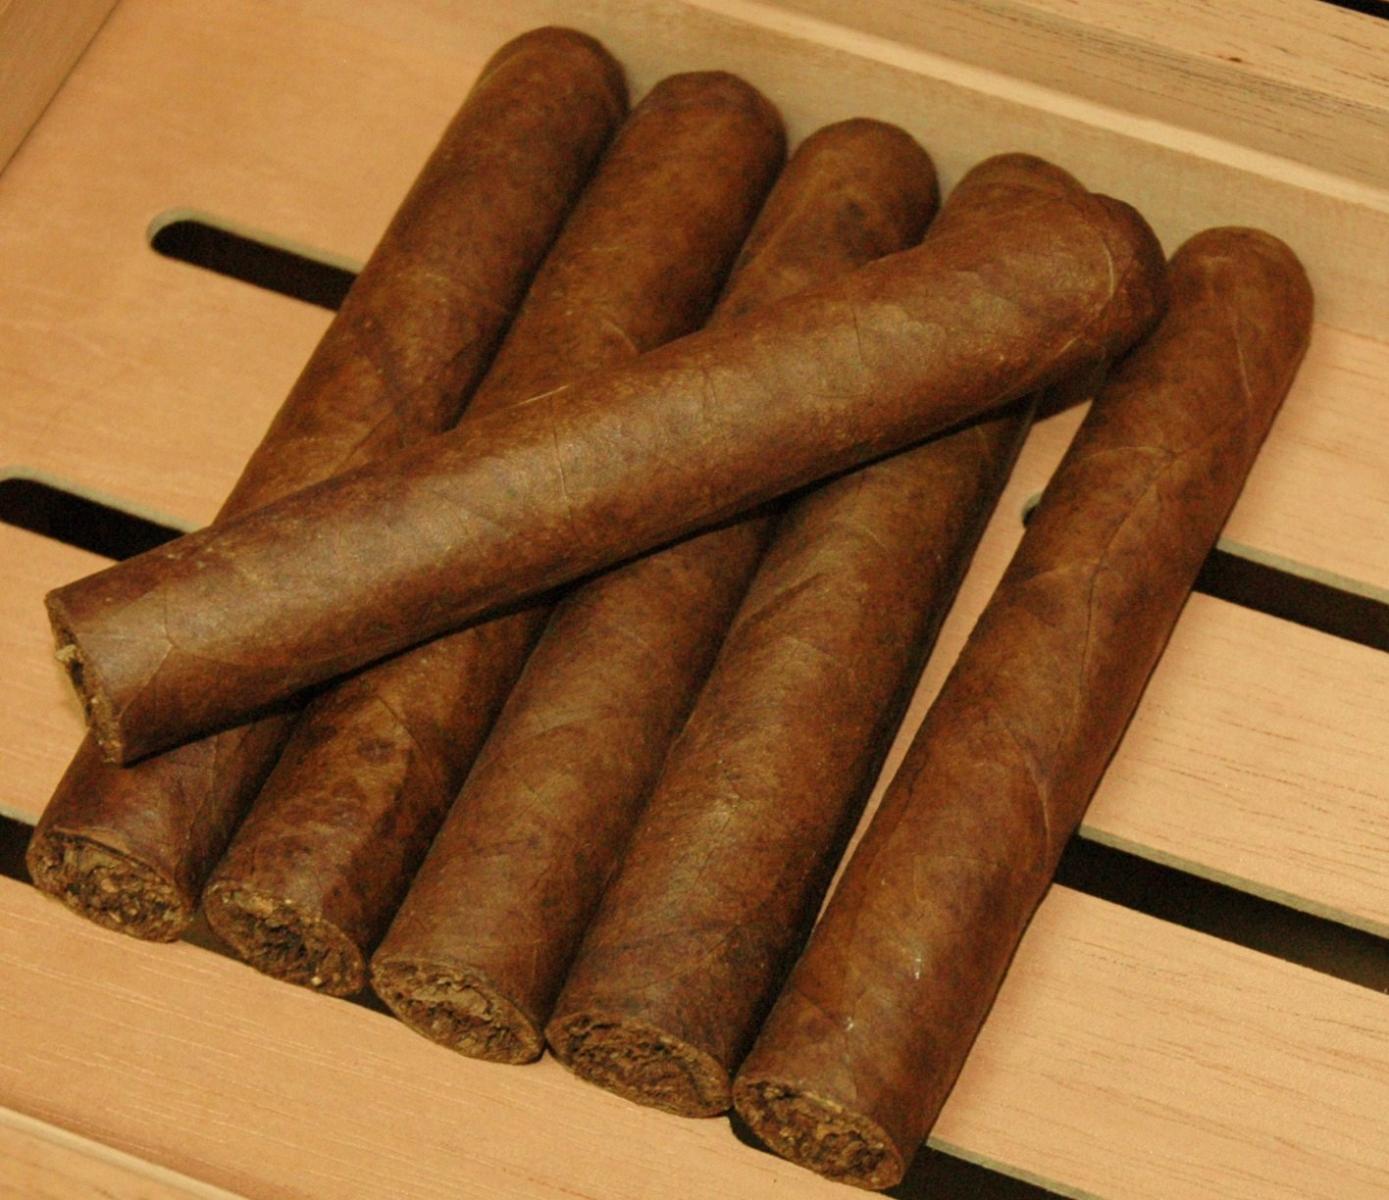 cigars 046.JPG